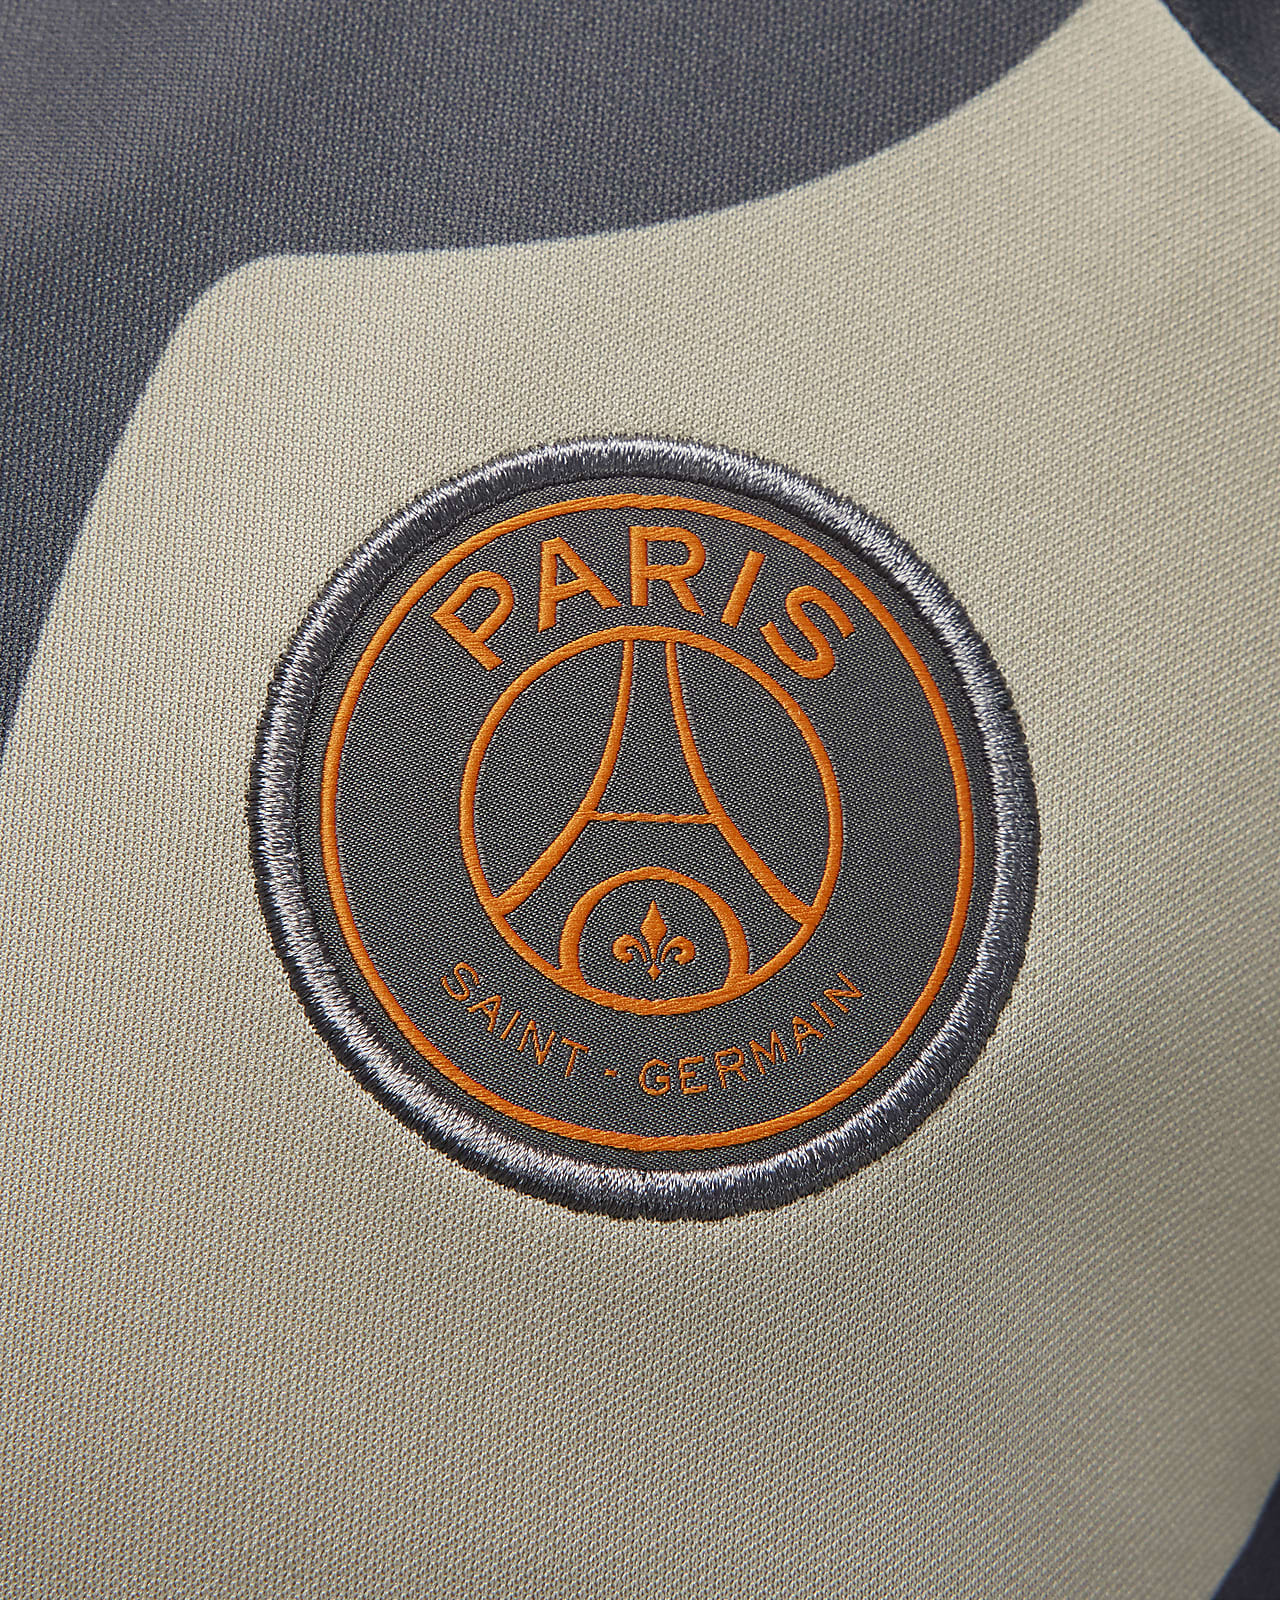 Paris Saint-Germain Academy Pro Men's Nike Dri-FIT Pre-Match Soccer Top